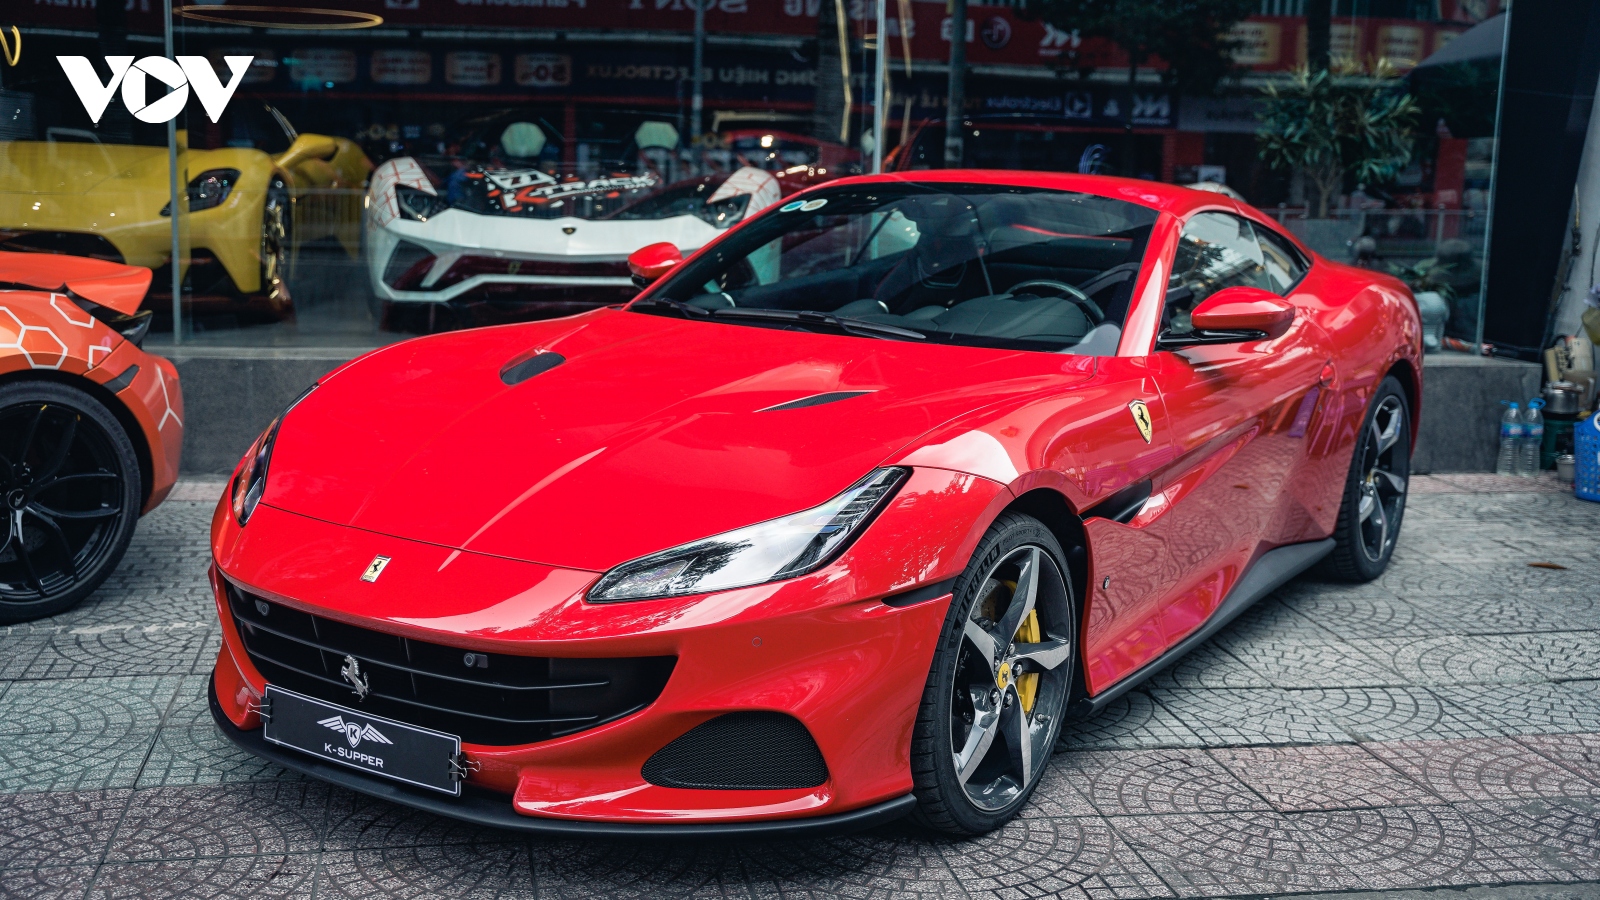 Cận cảnh Ferrari Portofino M hơn 15 tỷ đồng đầu tiên tại Việt Nam